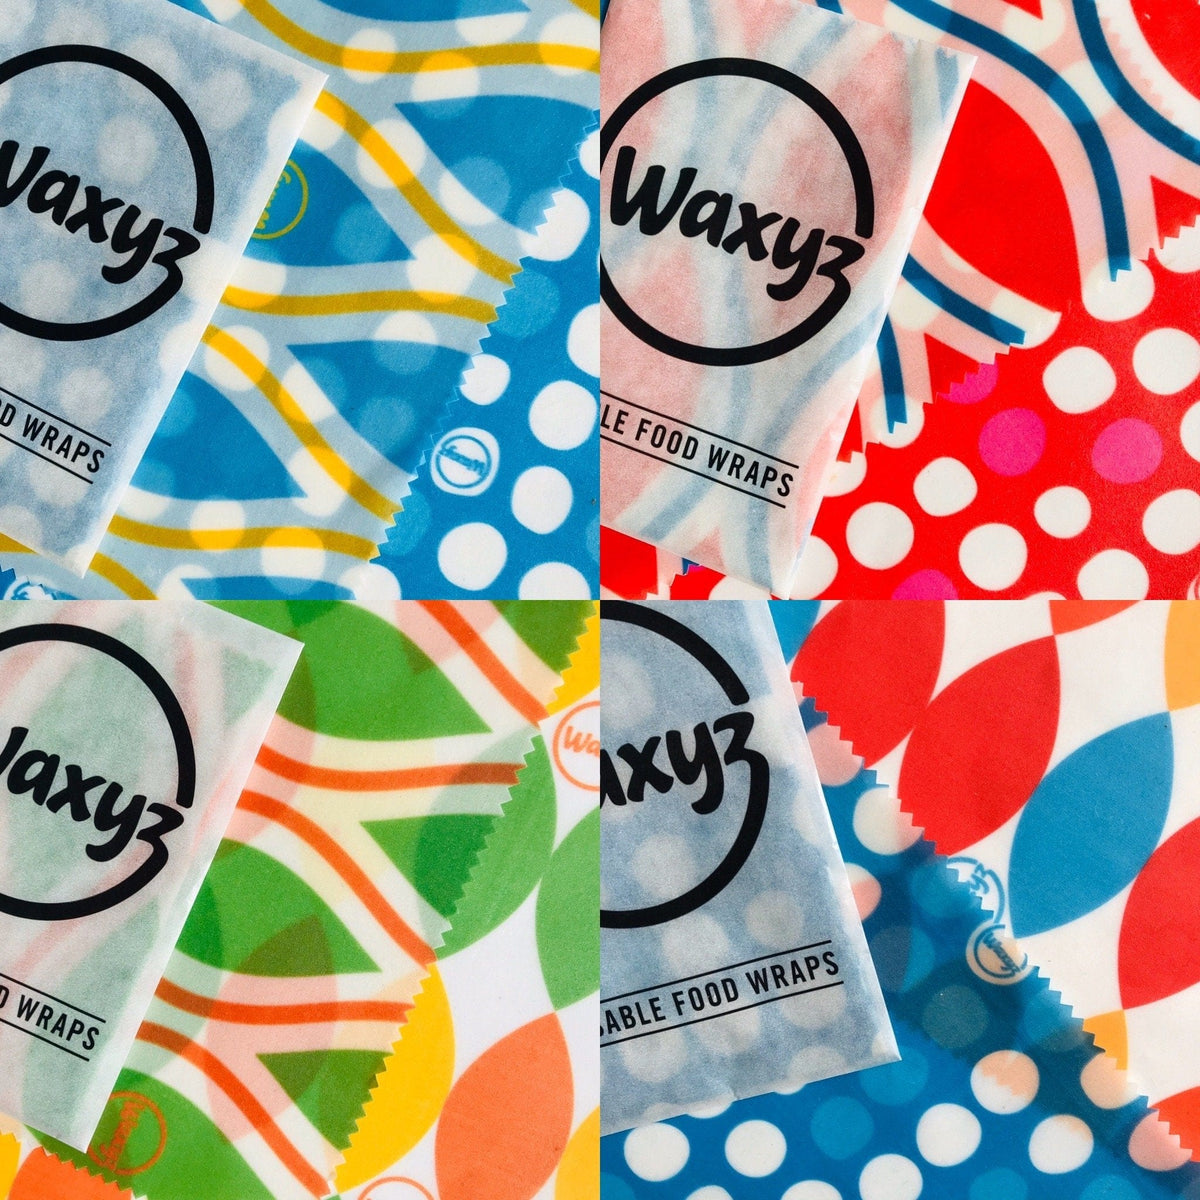 Waxyz Wrap Waxyz Wrap - Twin Pack - Two Small